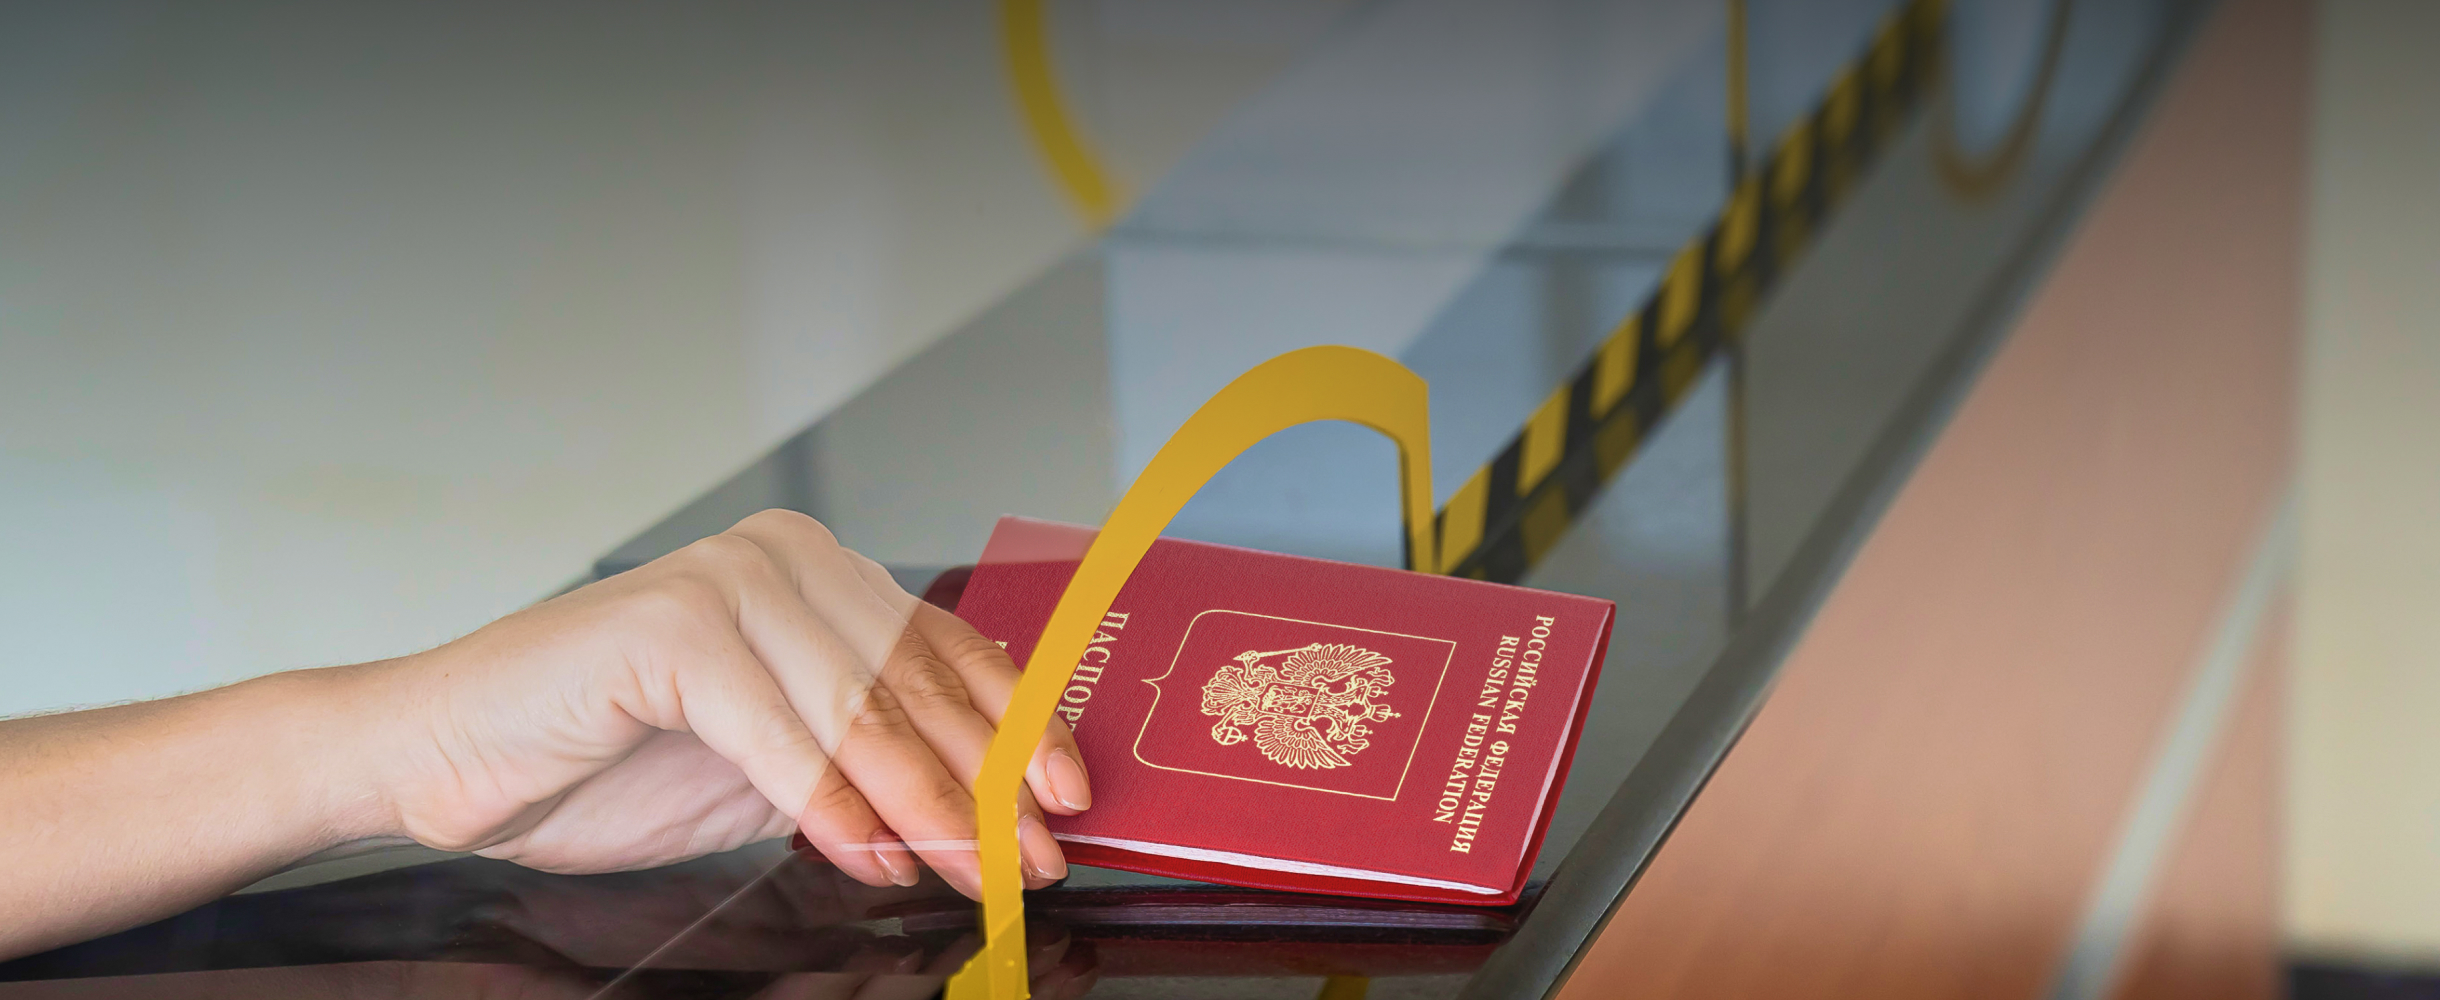 «Консул сам позвонил мне на мобильный»: 3 истории о получении шенгенской визы за границей